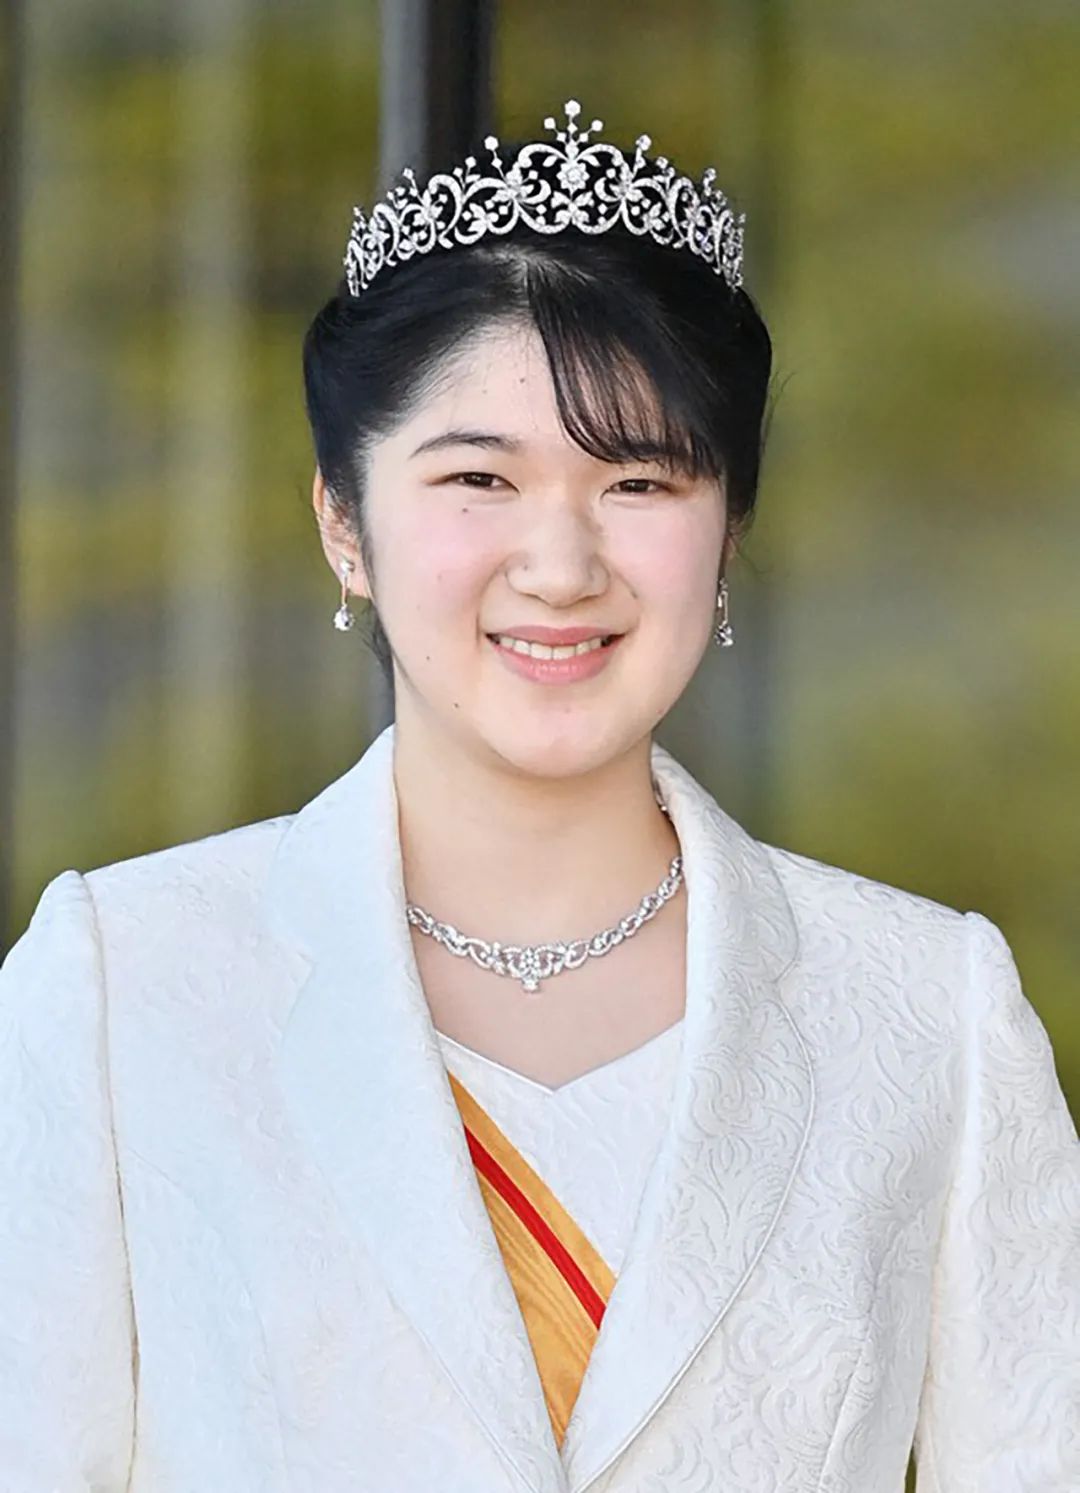 日本爱子公主成人礼好美,真是女大十八变,不负母亲雅子好基因!